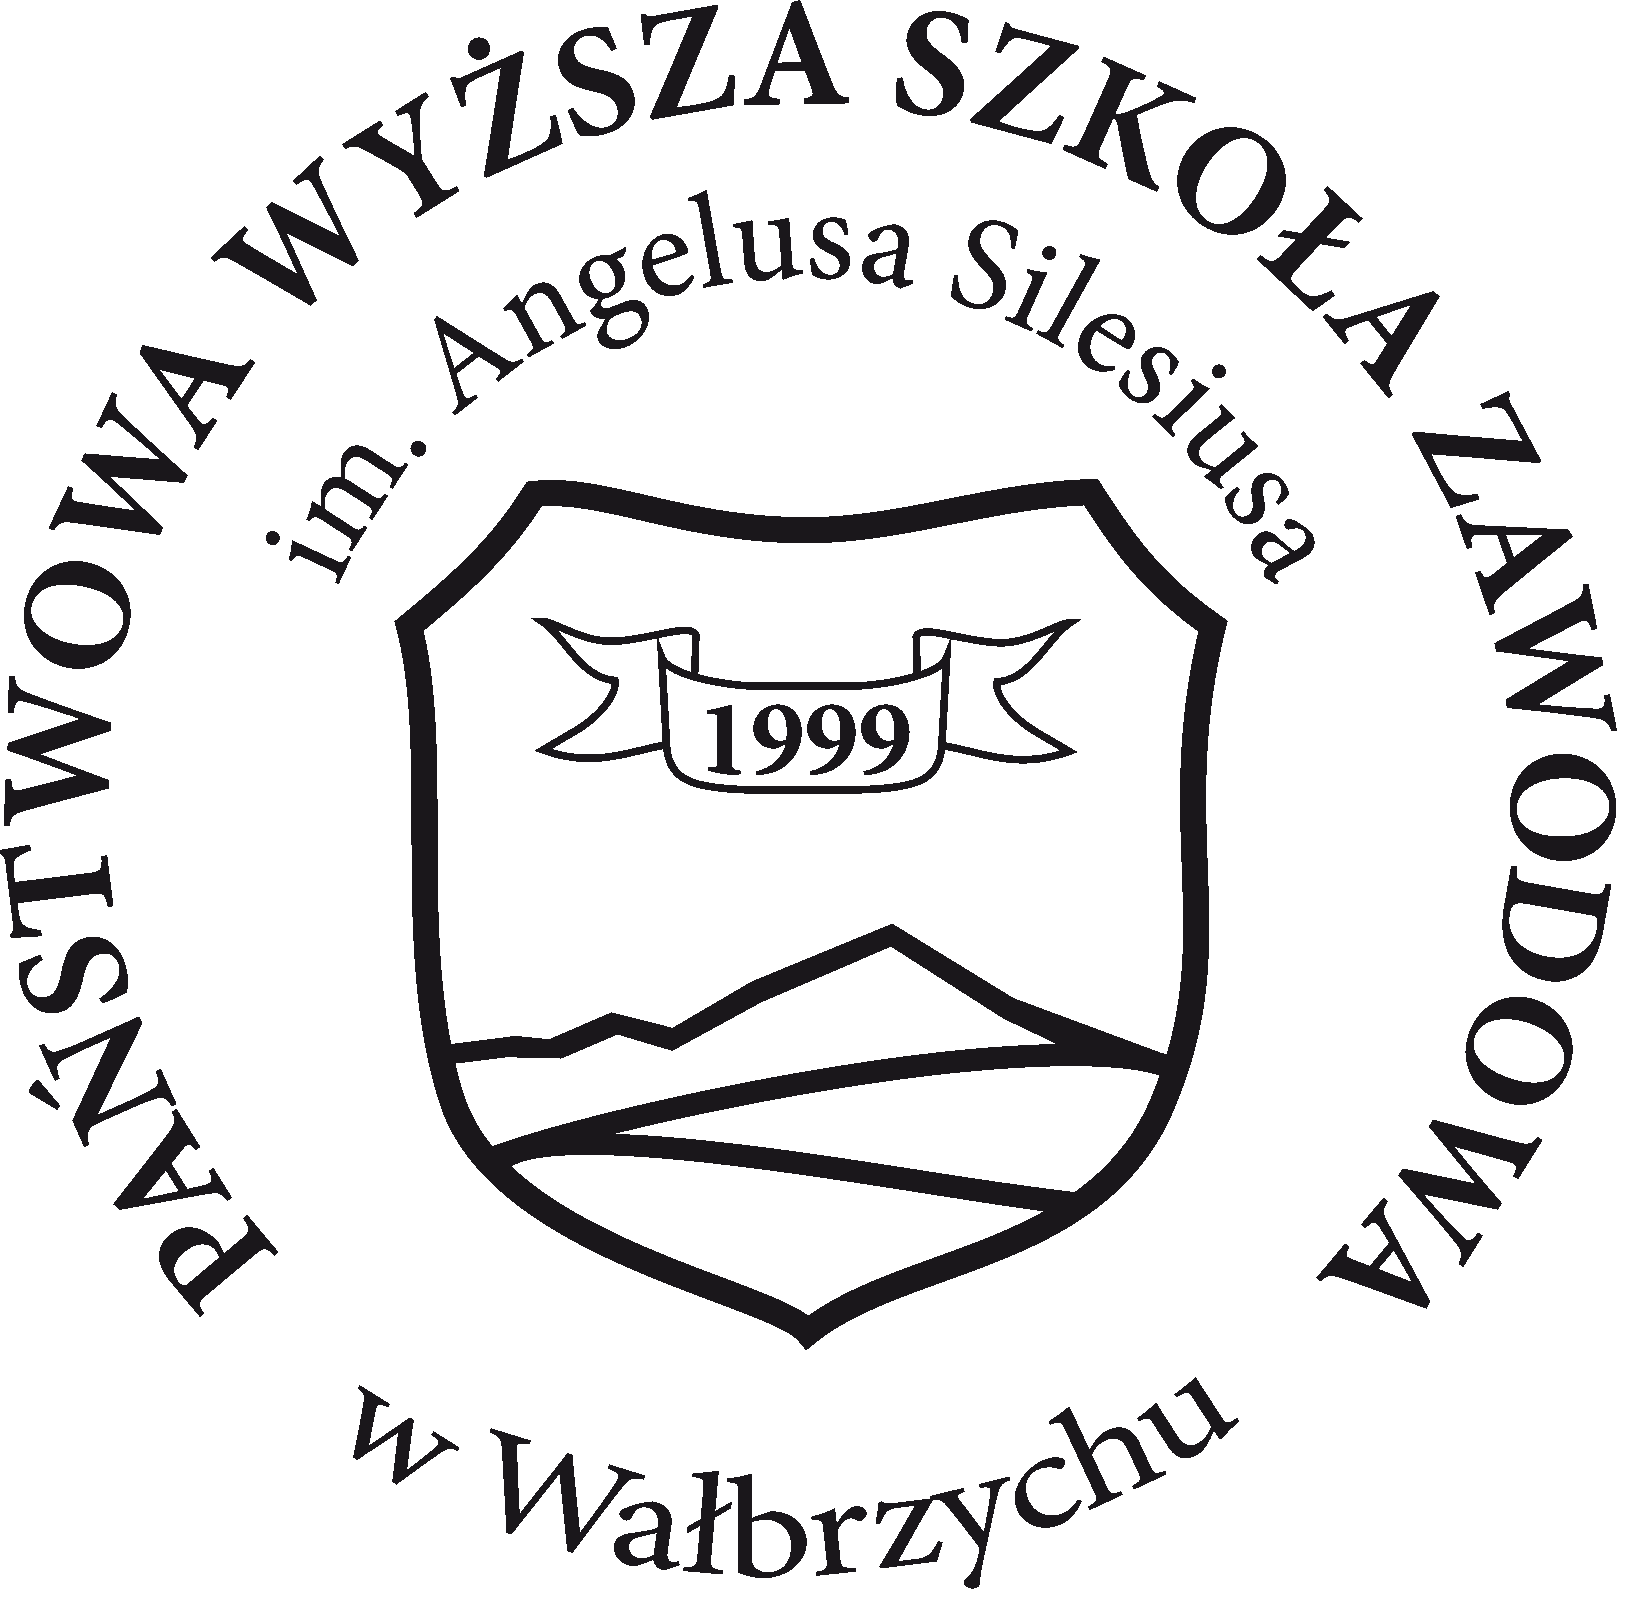 PWSZ AS logo BLACK